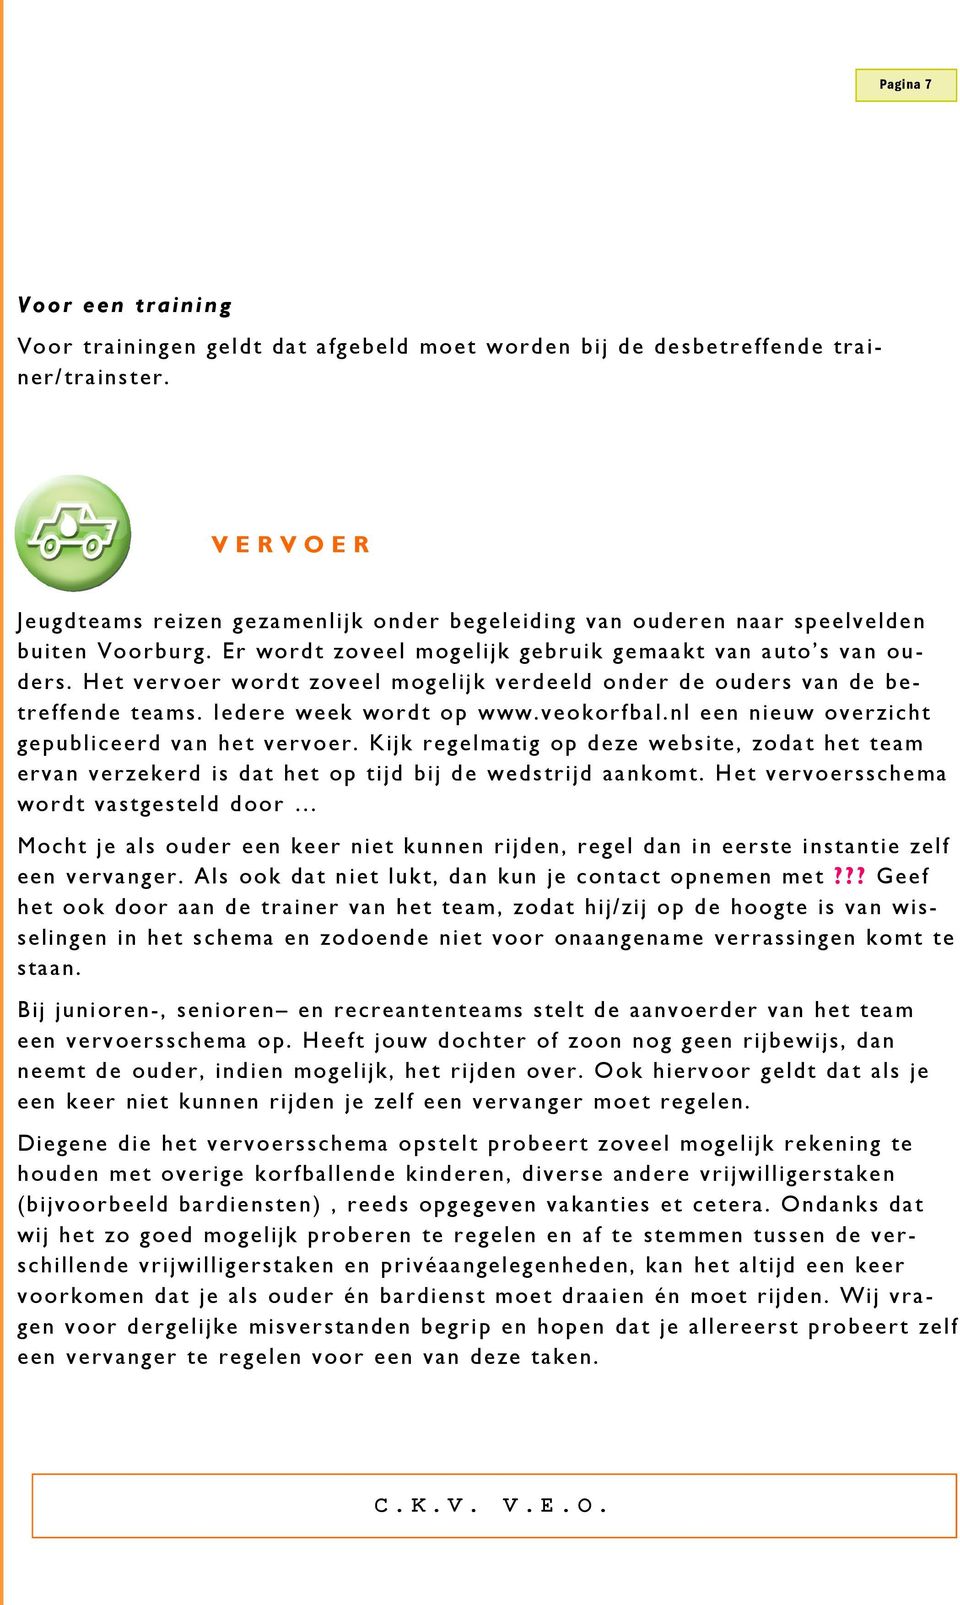 Het vervoer wordt zoveel mogelijk verdeeld onder de ouders van de betreffende teams. Iedere week wordt op www.veokorfbal.nl een nieuw overzicht gepubliceerd van het vervoer.